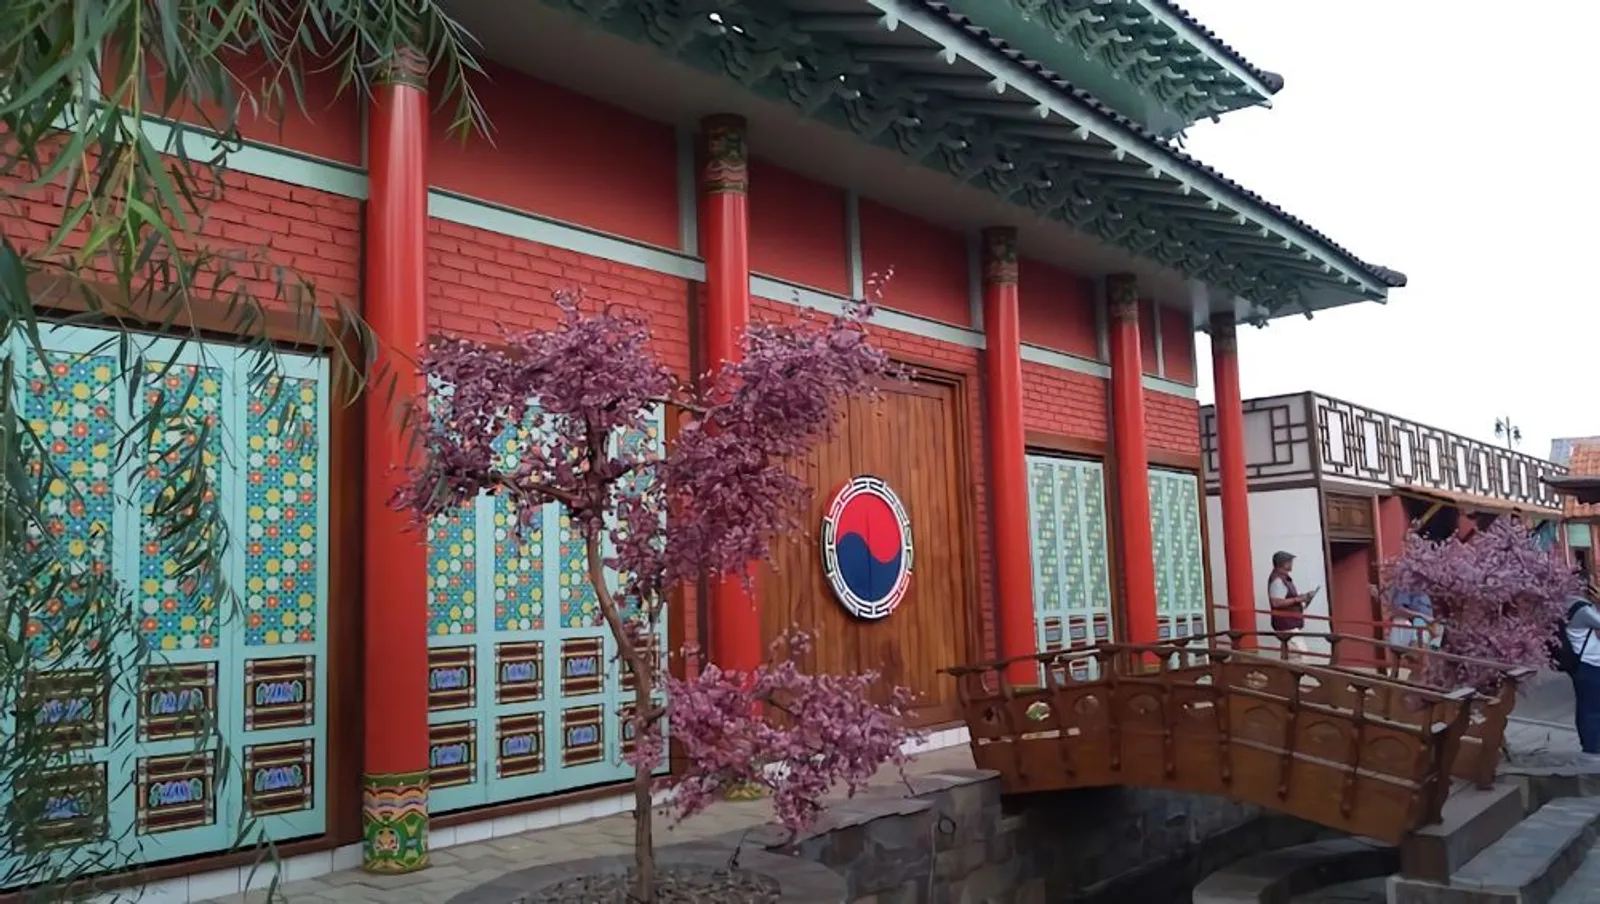 Liburan A la Korea Selatan di Kampung Korea (Little Seoul), Bandung